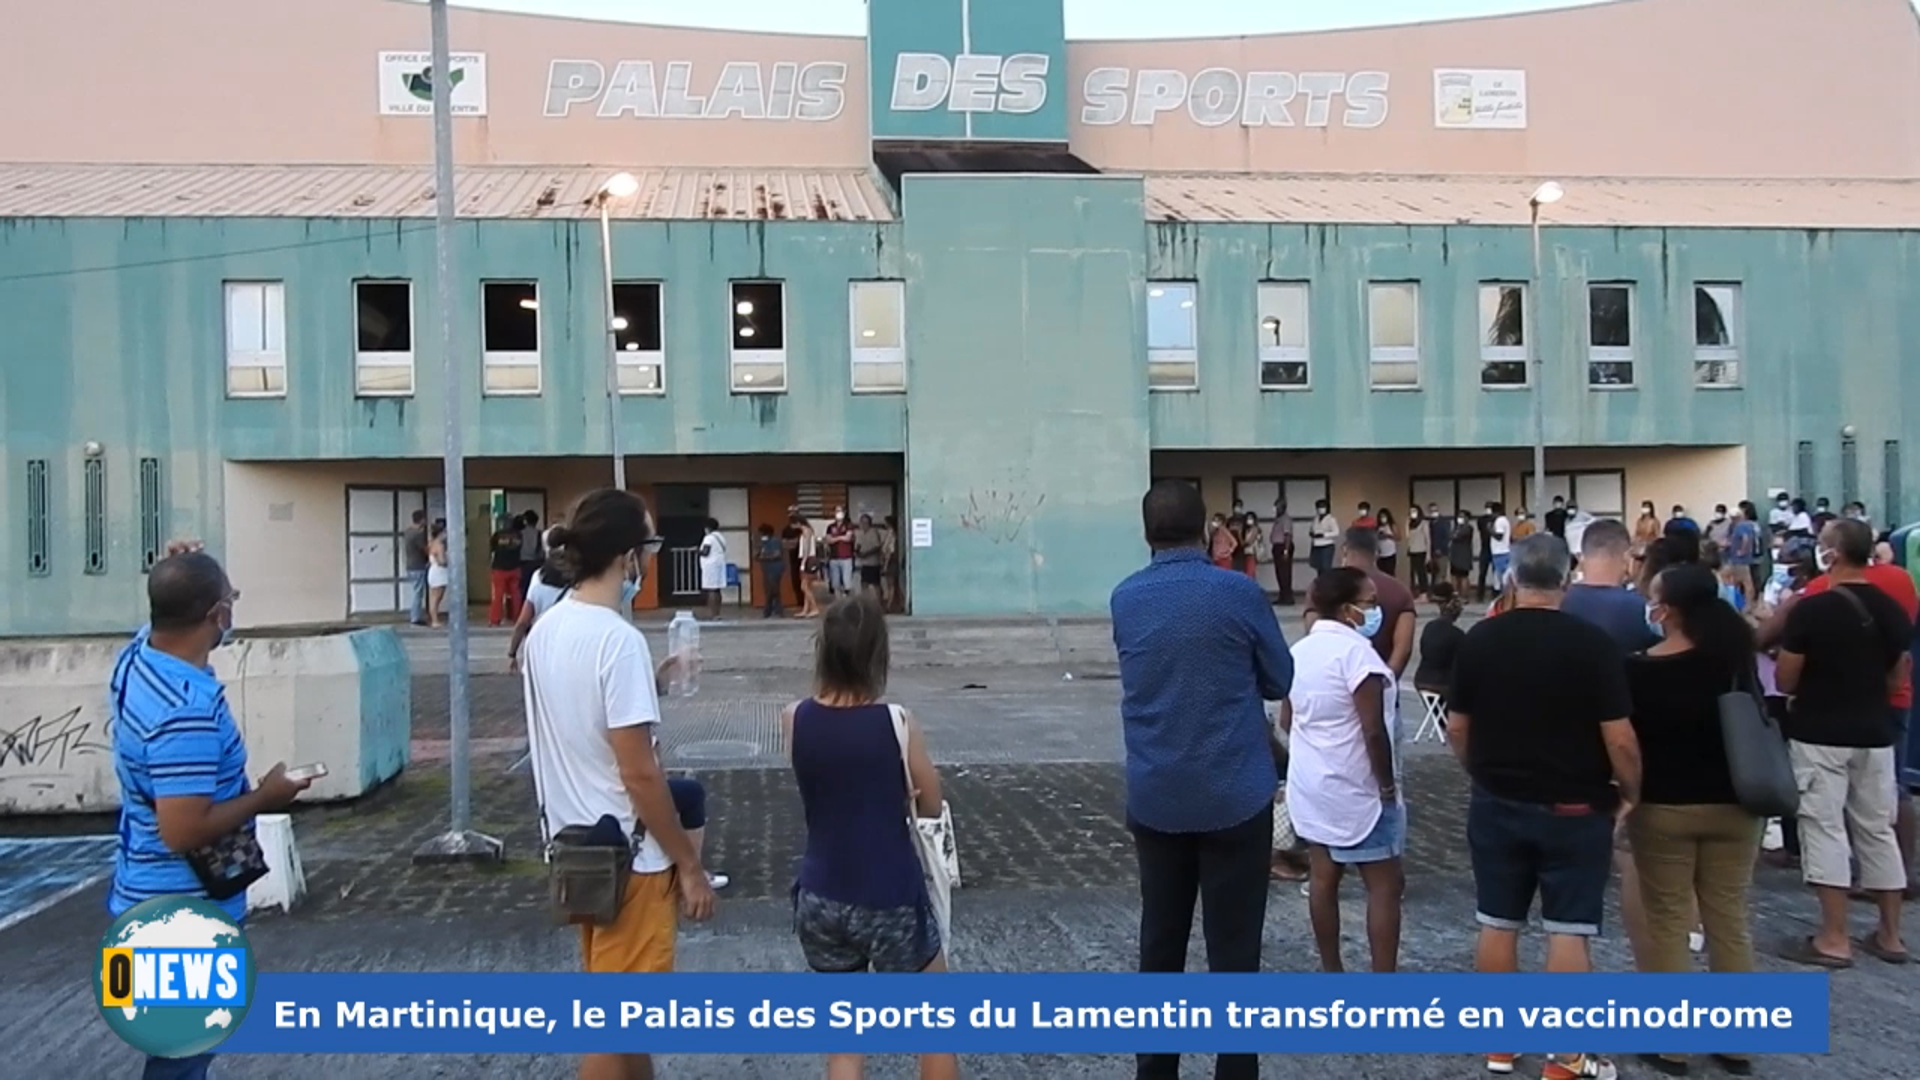 [Vidéo] Onews Martinique.Le Palais des Sports du lamentin transformé en vaccinodrome